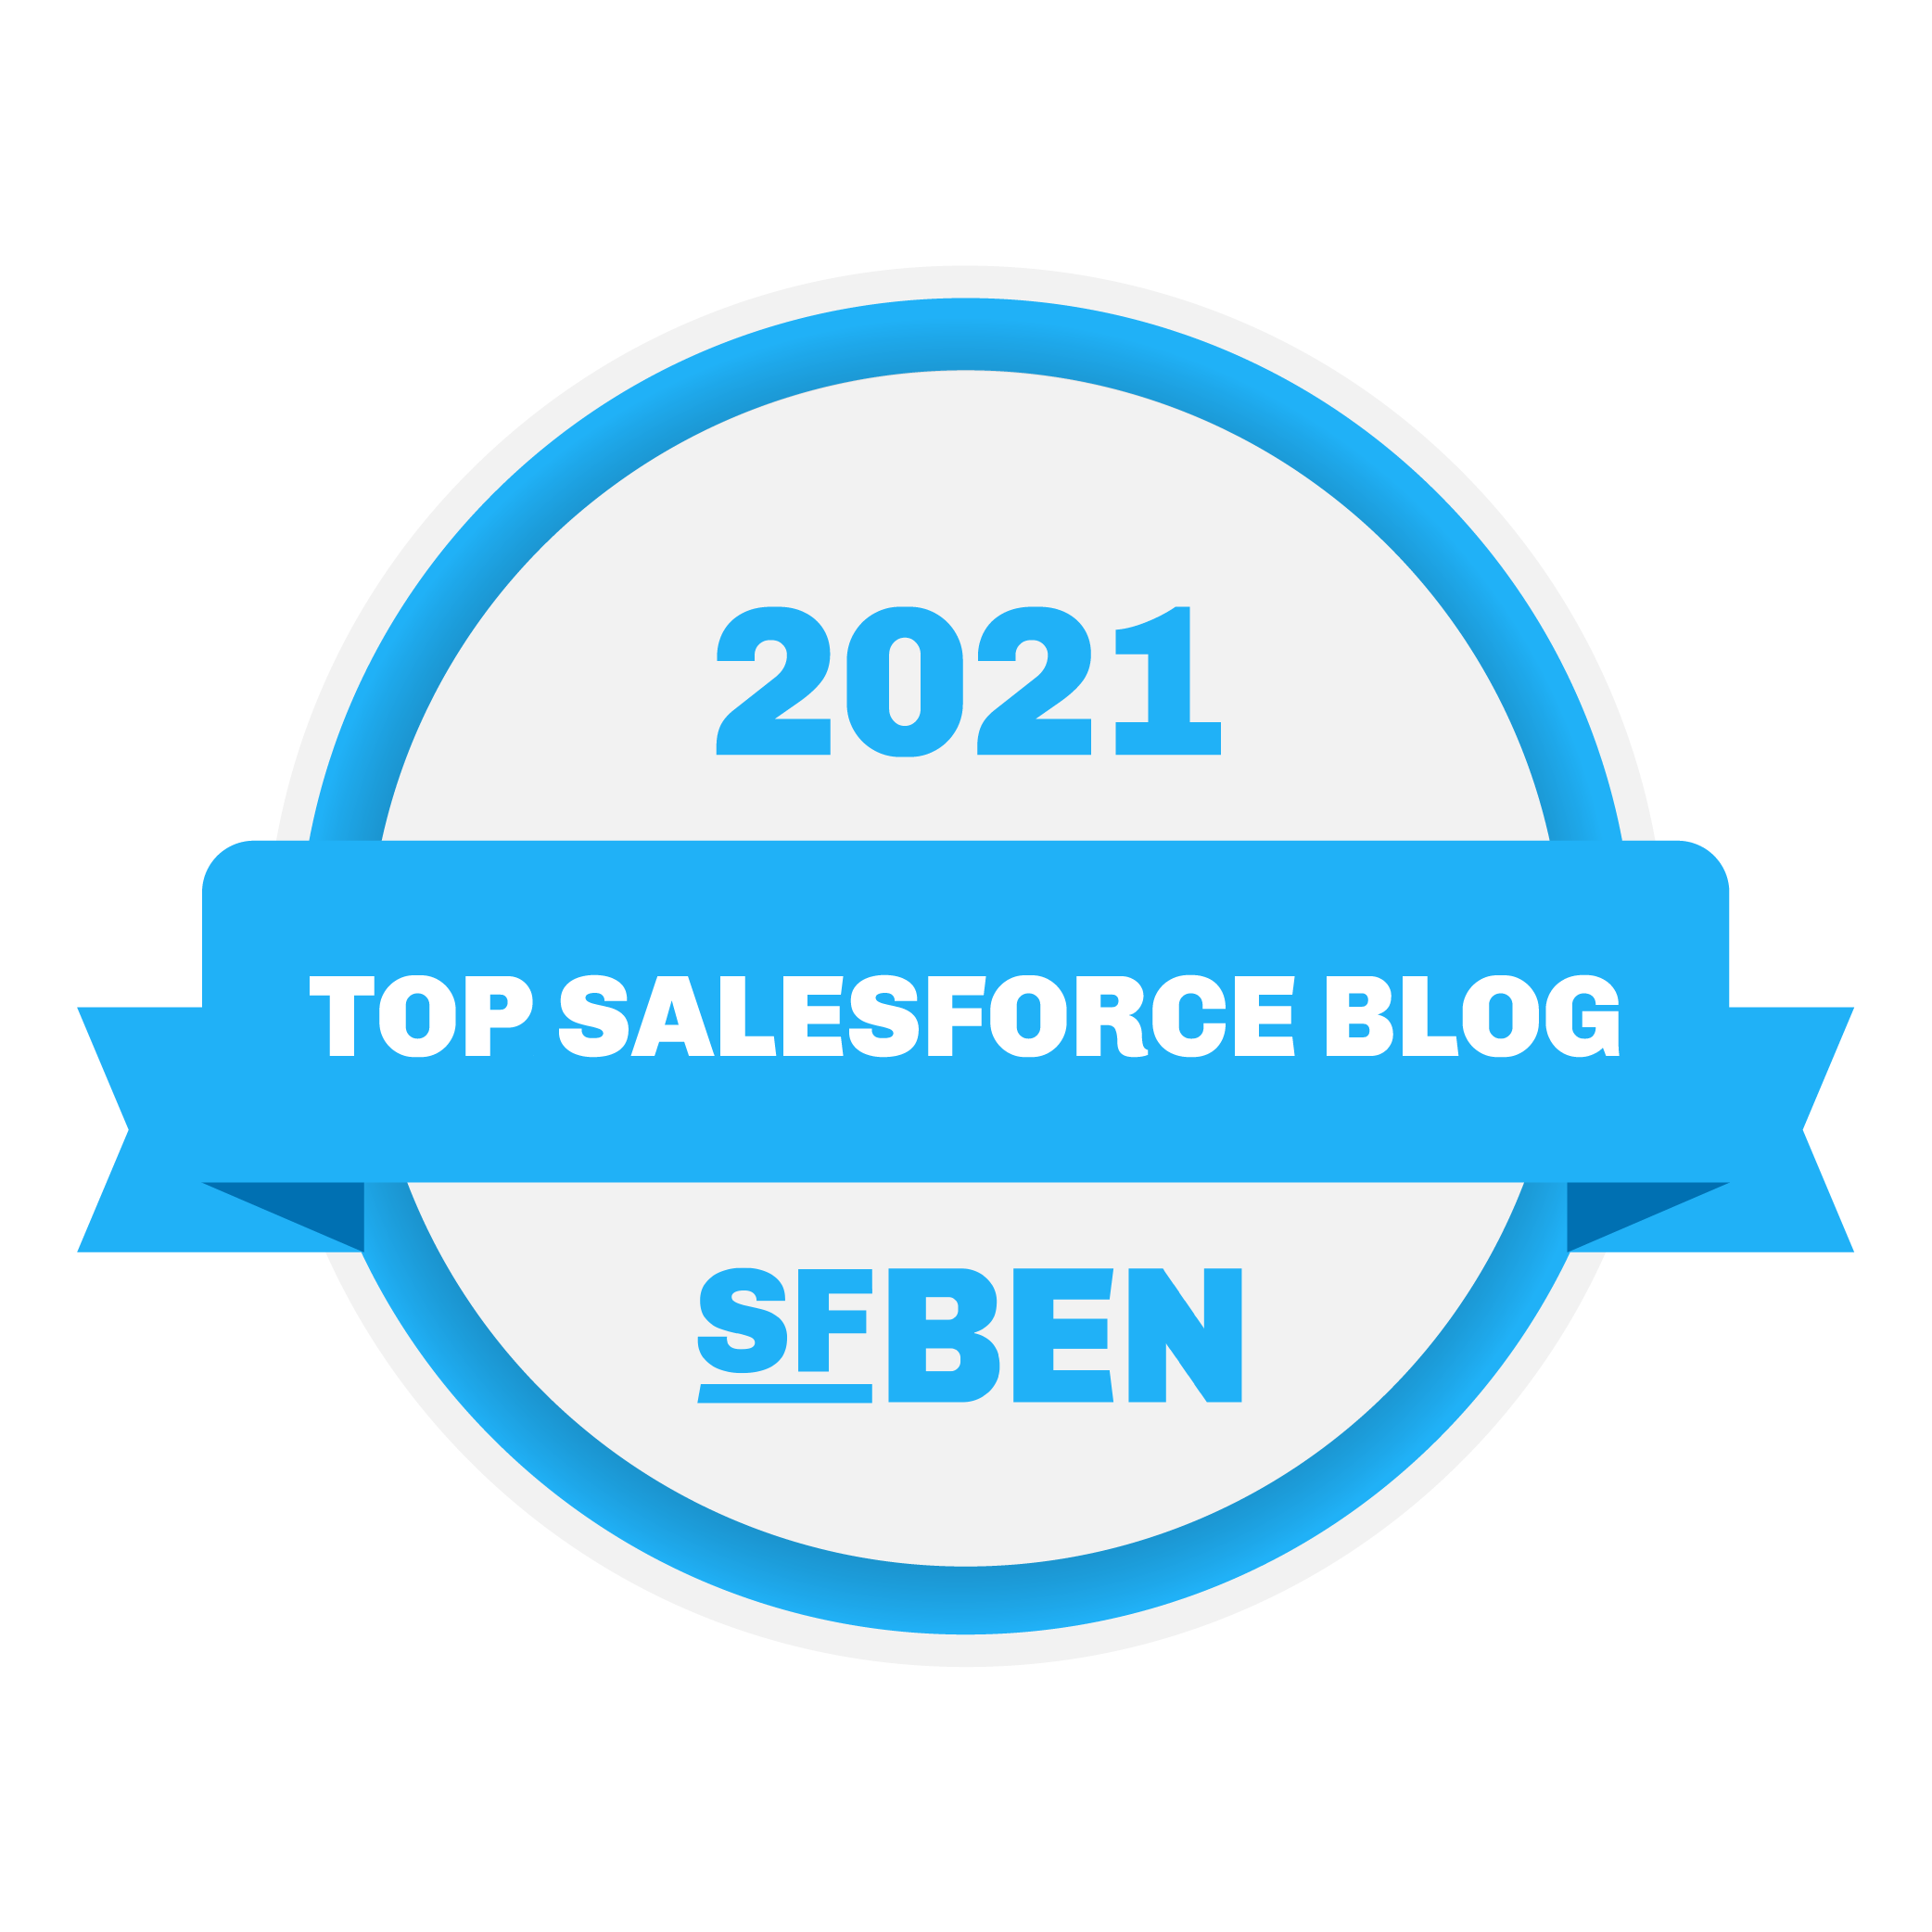 Top Salesforce Blog 2020 - SFBEN